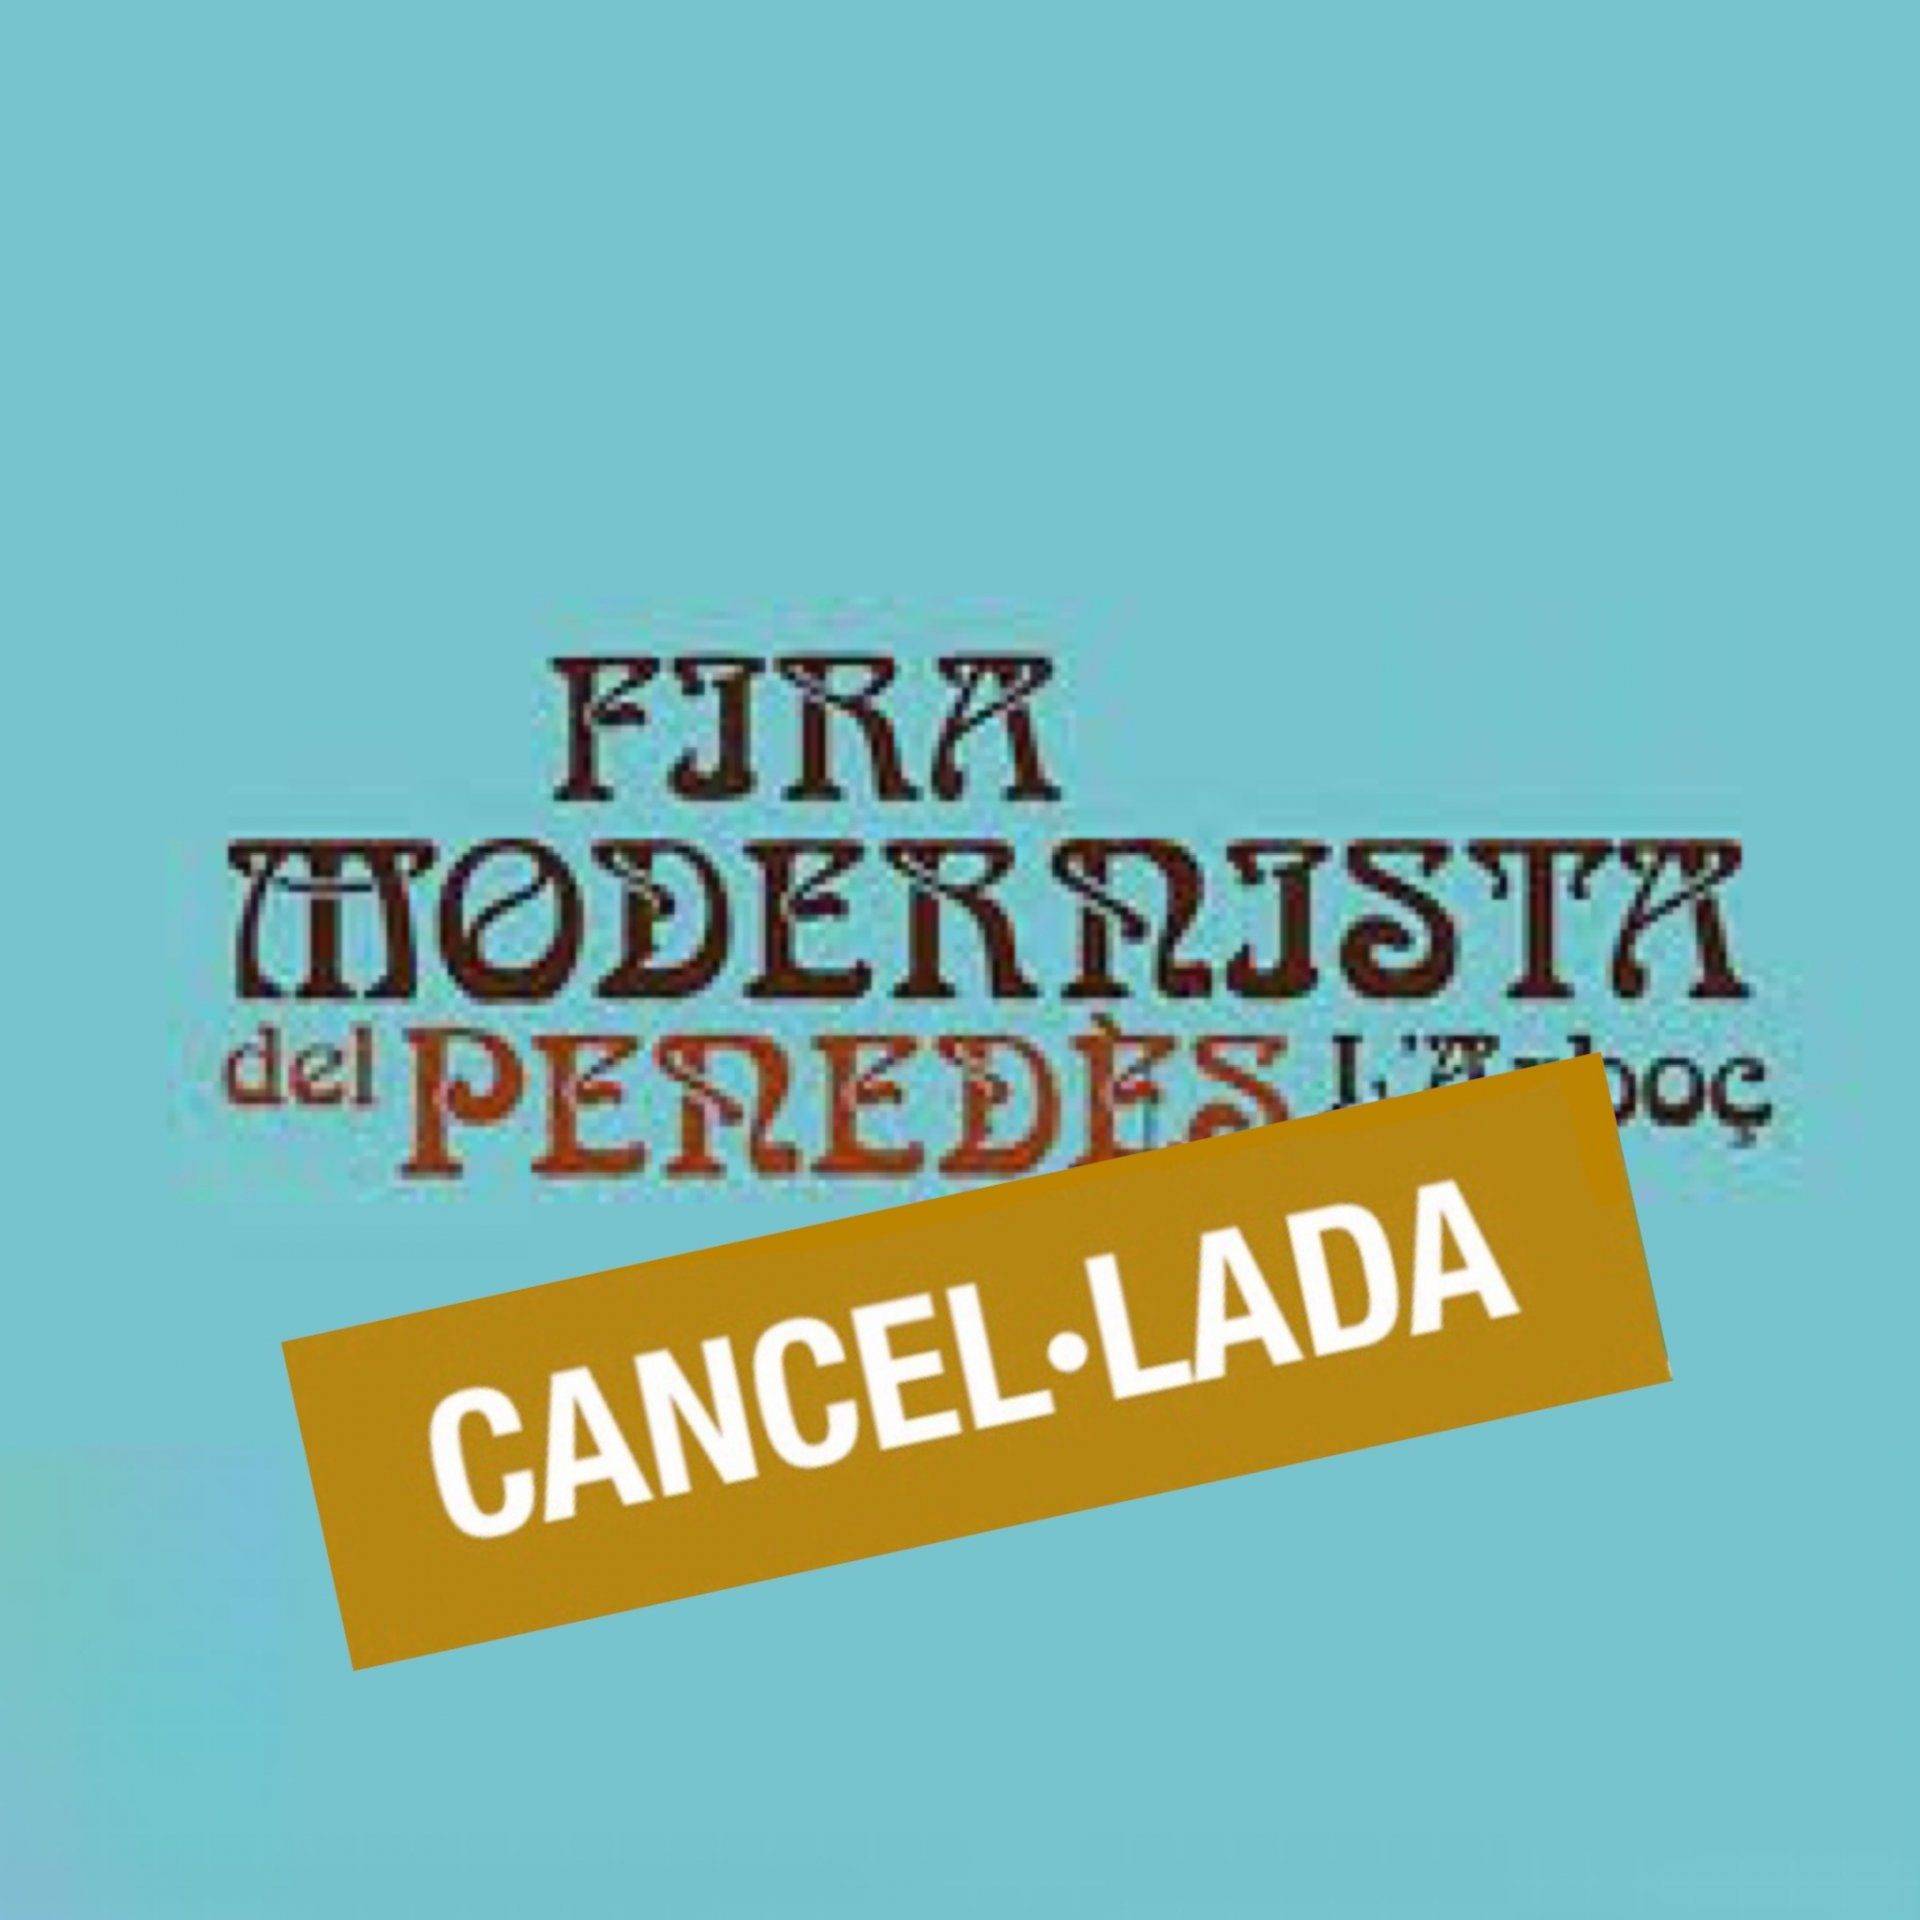 Fira Modernista del Penedès a l’Arboç 2020 cancelada